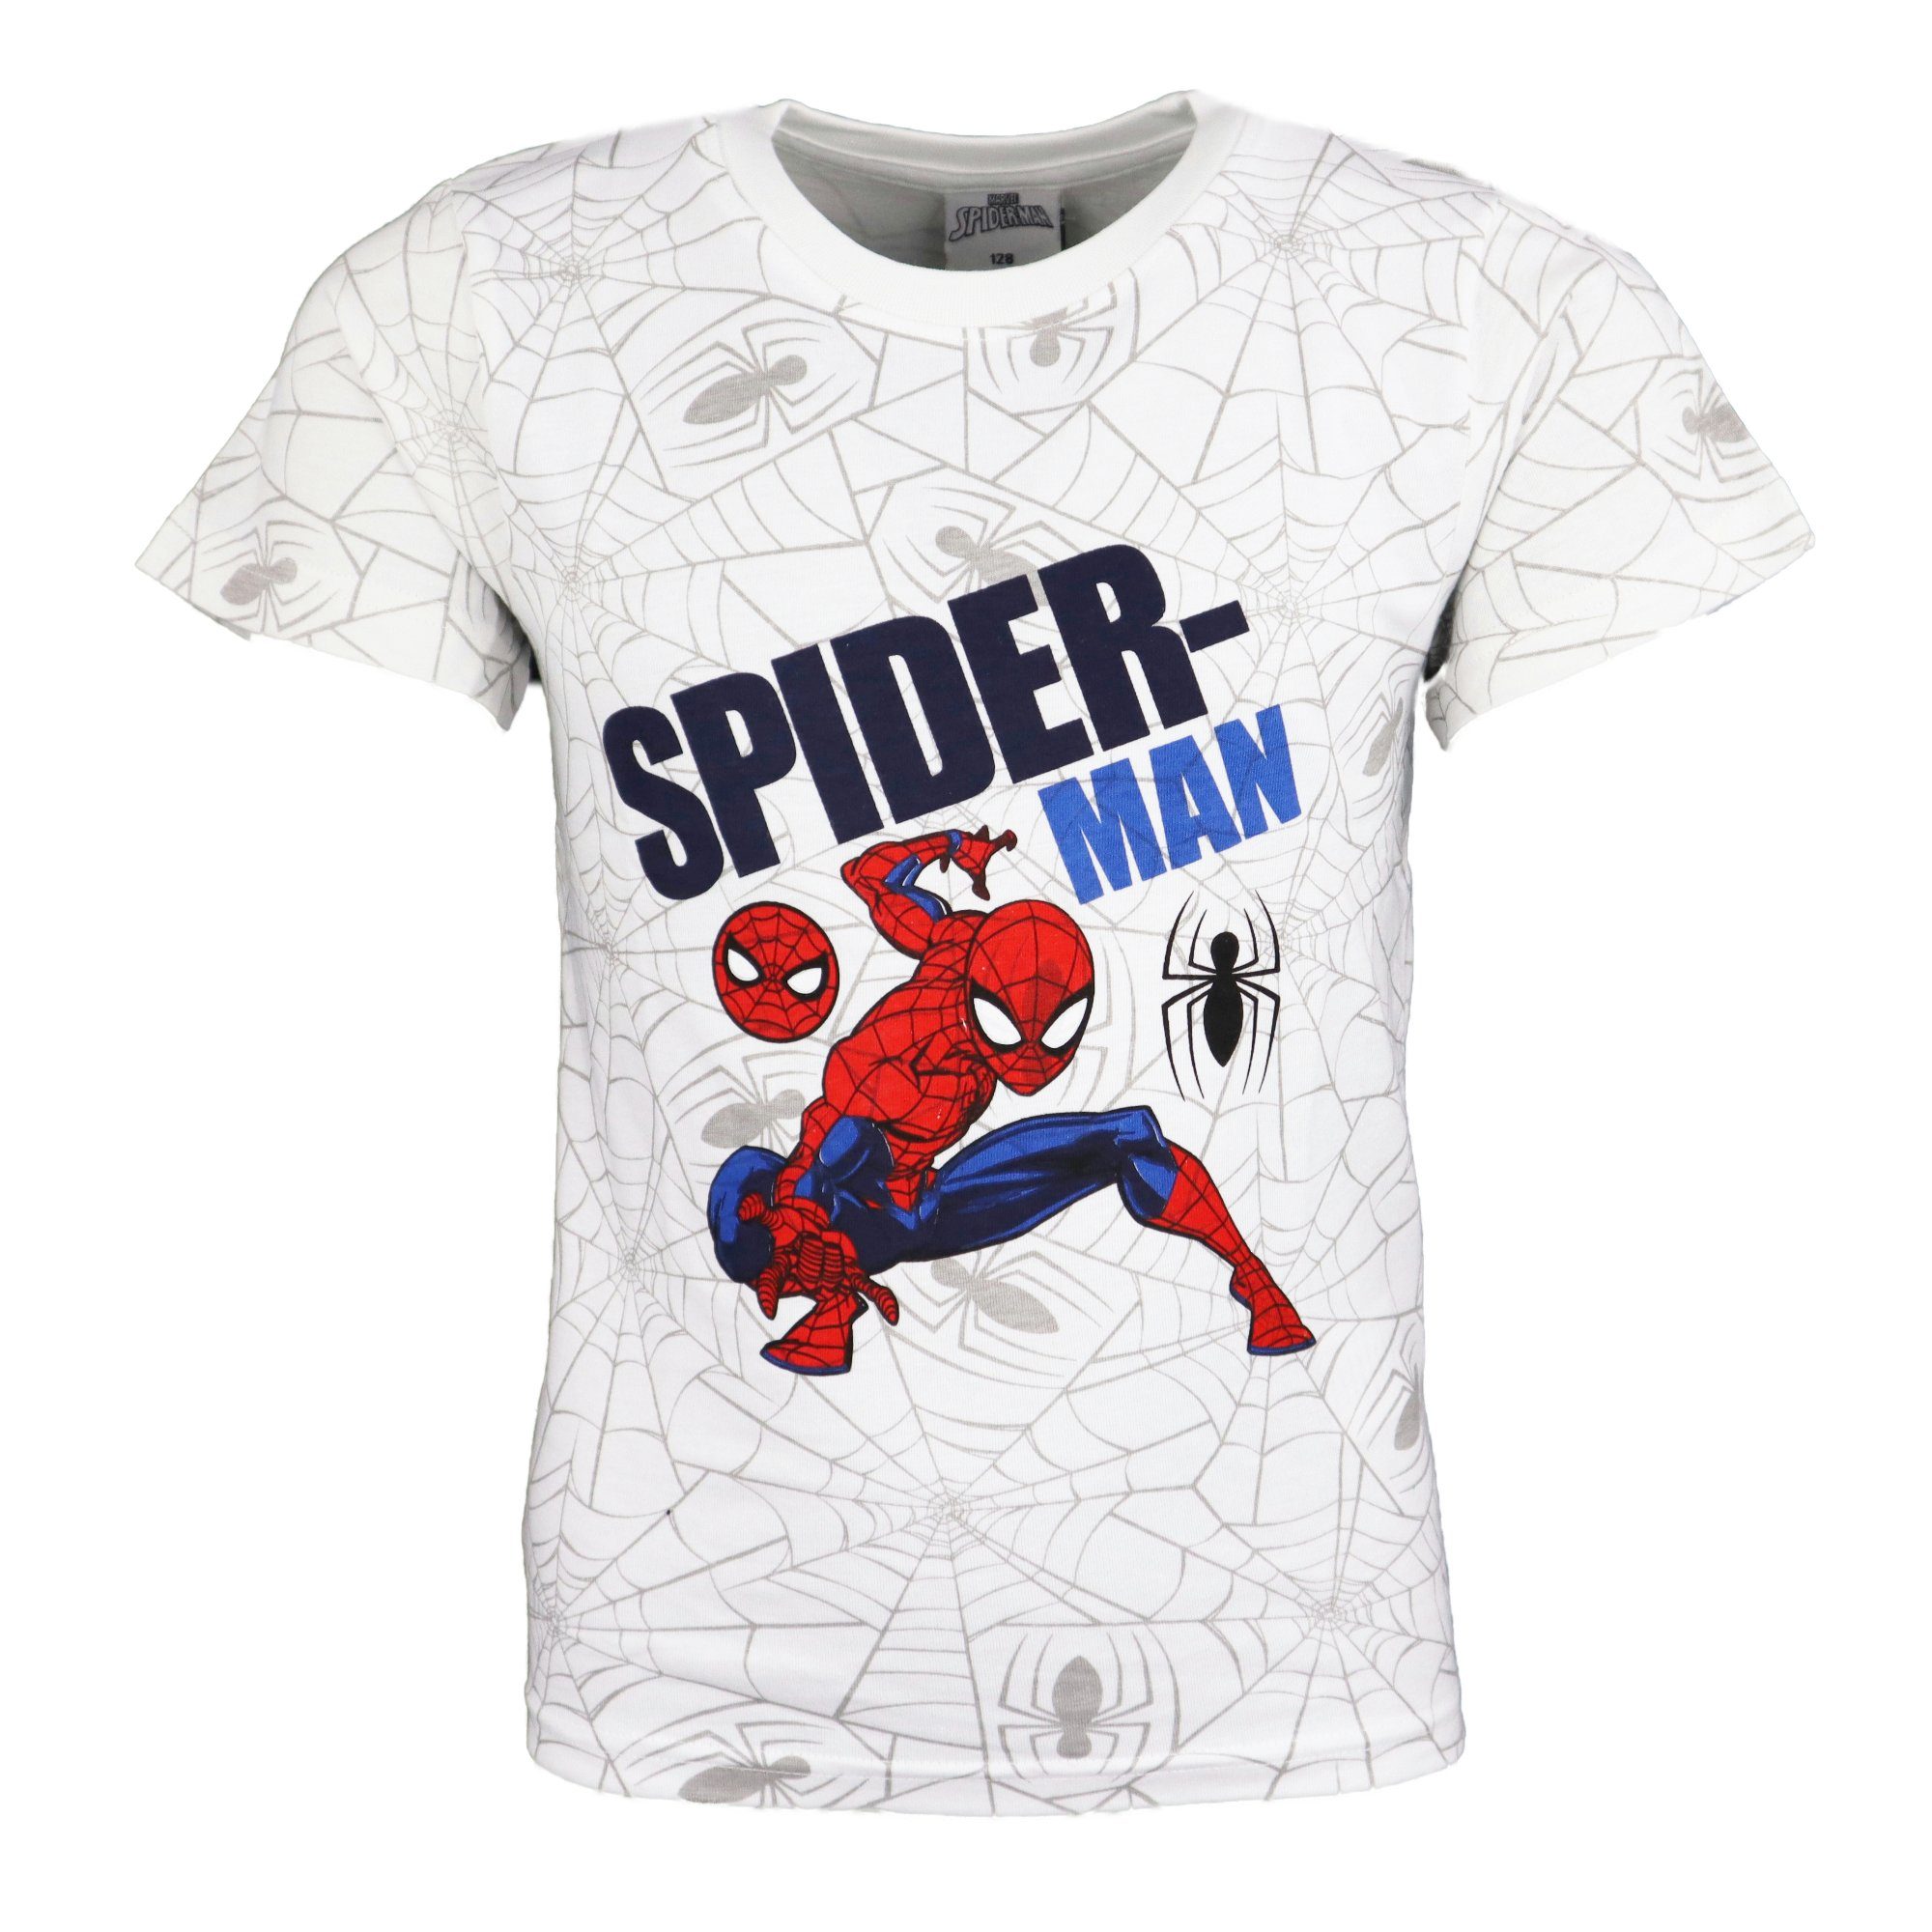 MARVEL Print-Shirt Marvel Spiderman Kinder Jungen T-Shirt Gr. 104 bis 134,  100% Baumwolle, Das tolle Motiv von Marvels Spiderman ist ein echter